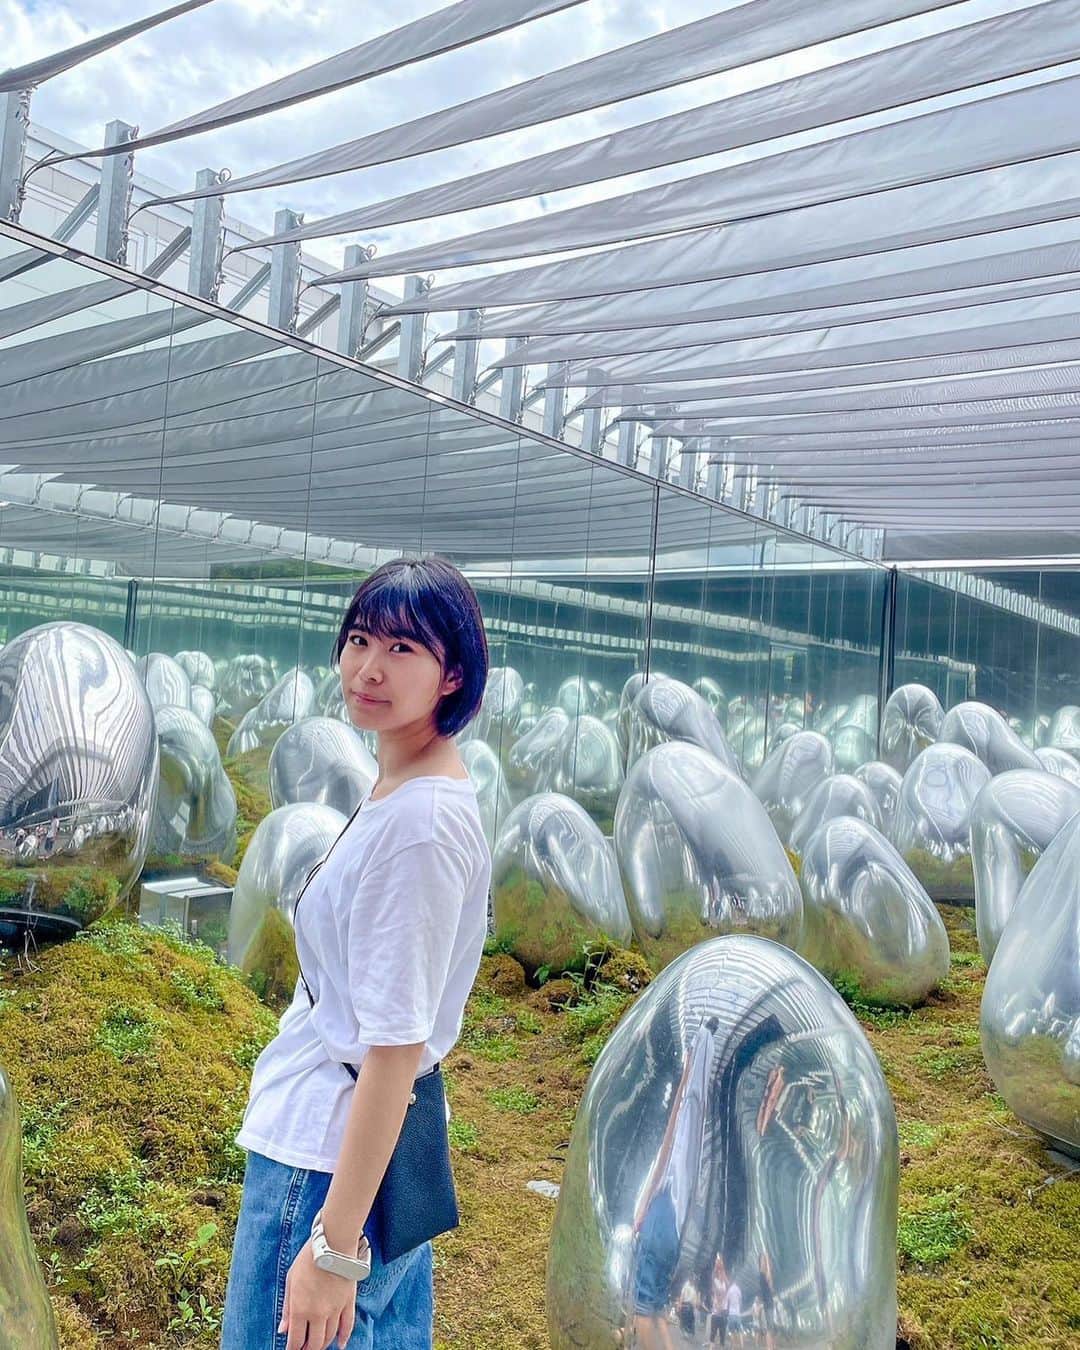 西村禮のインスタグラム：「東京・豊洲の「チームラボプラネッツ」にて、「身体ごと没入する」アート体験をしてきました！  ＜チームラボプラネッツとは？＞ 超巨大な4つの作品空間と2つの庭園からなる「水に入るミュージアムと花と一体化する庭園 」。 はだしとなって、身体ごと没入し、他者と共に世界と一体となる。  お友達と2回目の入場。 前回はコロナ禍だったので人が少なかったのですが、今回は外国人の方も多くすごく活気がありました！  チームラボの人気すごい🥺  やっぱり異空間に迷い込んだような、不思議な体験が魅力的。  水に浸かったり、お花の世界に迷い込んだり…だからラフな格好で参加(笑)  全力で楽しむ気マンマンでした🤣  お友達、家族、パートナー、誰と行っても楽しめます(車椅子でも入場できます)  この夏、絶対に体験してほしい✨  PR @teamlab.planets #チームラボ #デートスポット #東京観光 #東京旅行 #teamlab #teamlabplanets #チームラボプラネッツ #豊洲」